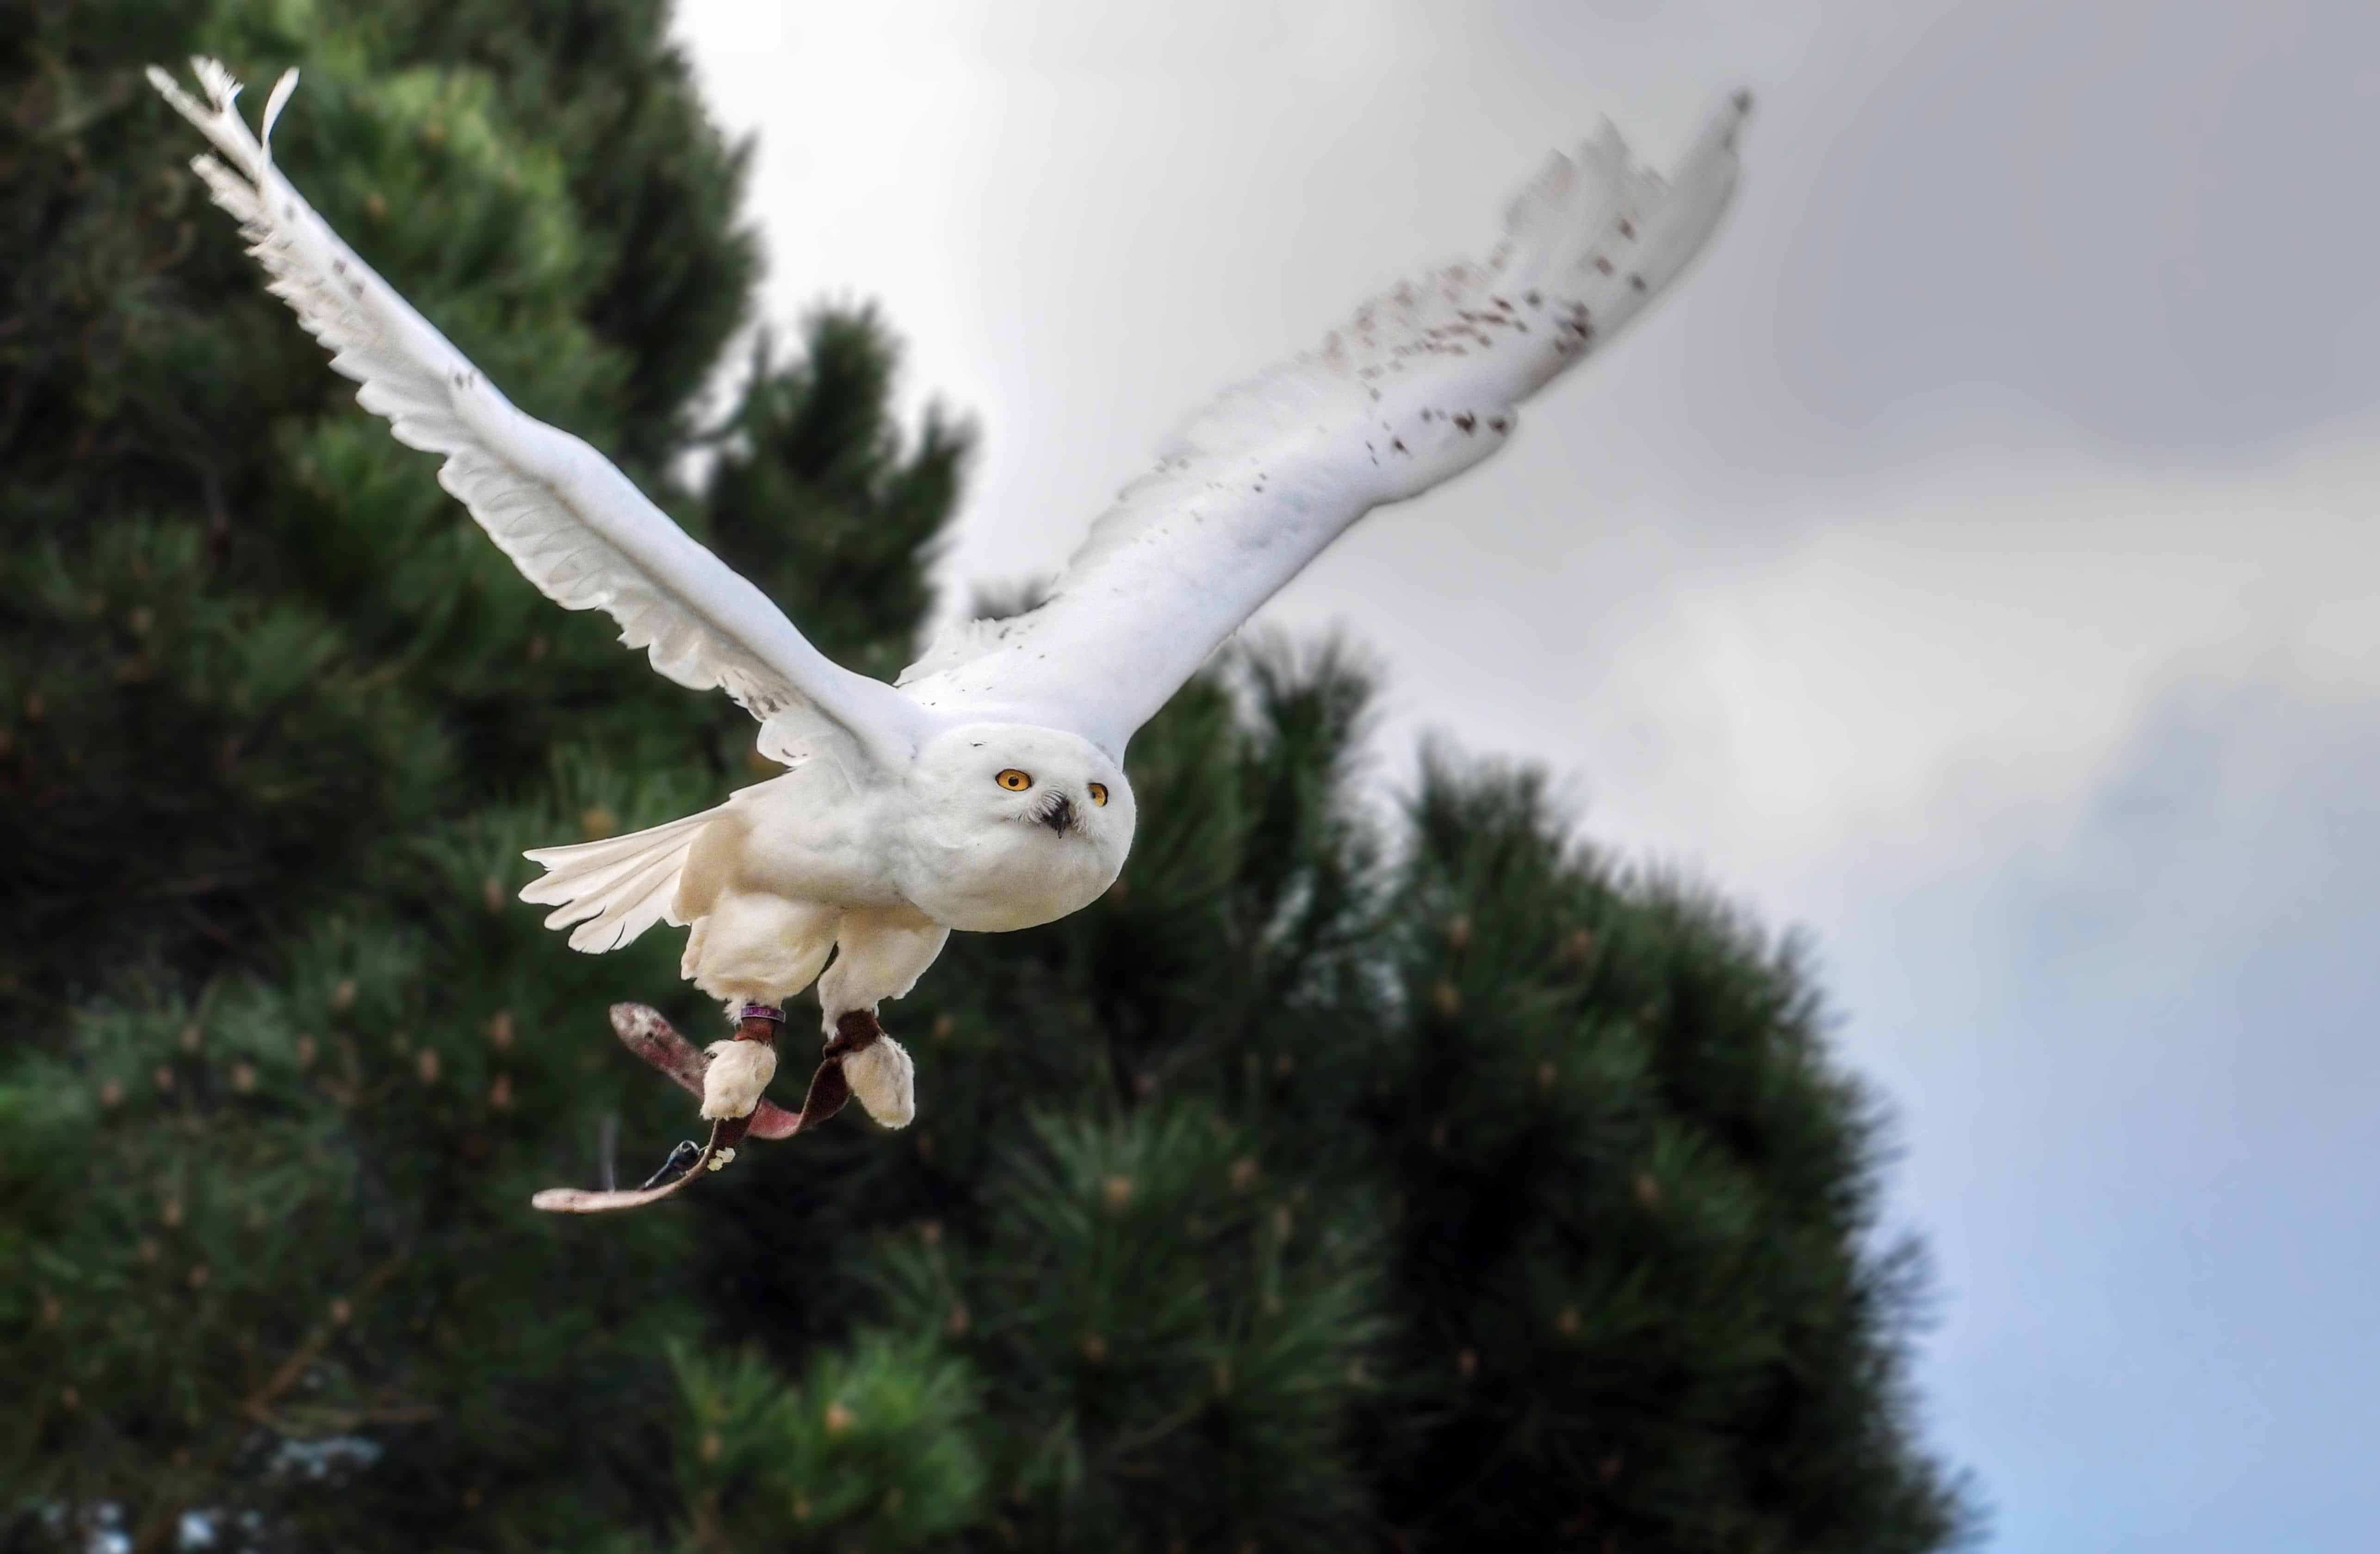 Free picture: white owl, bird, tree, animal, white, feather, wildlife ...